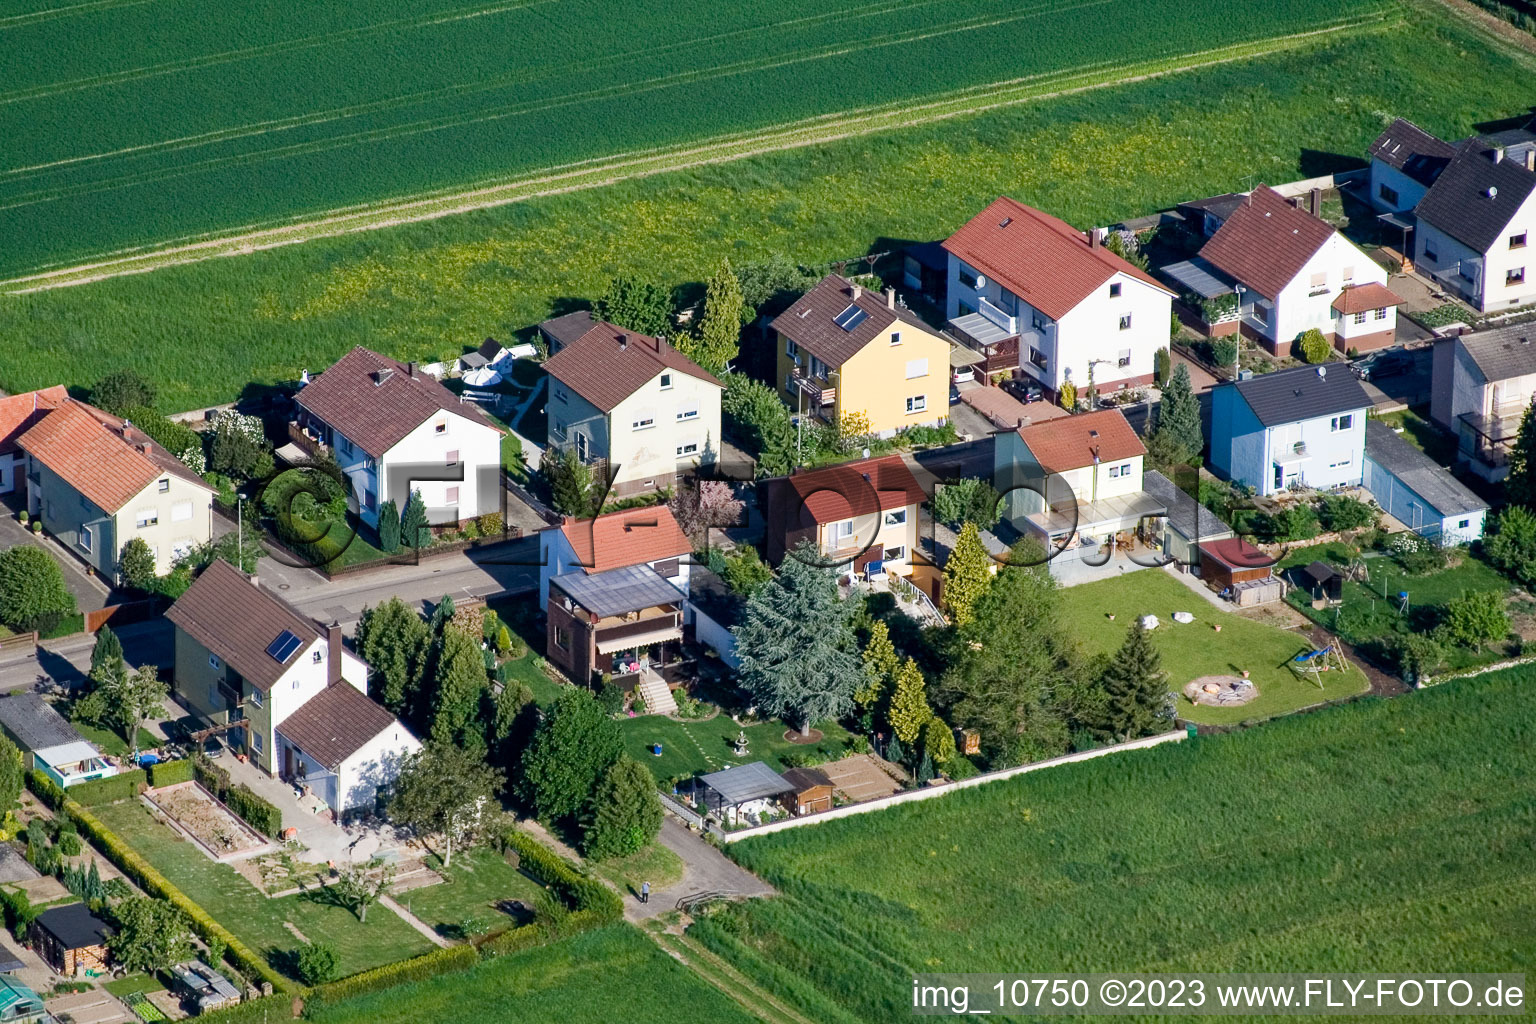 Freckenfeld dans le département Rhénanie-Palatinat, Allemagne du point de vue du drone